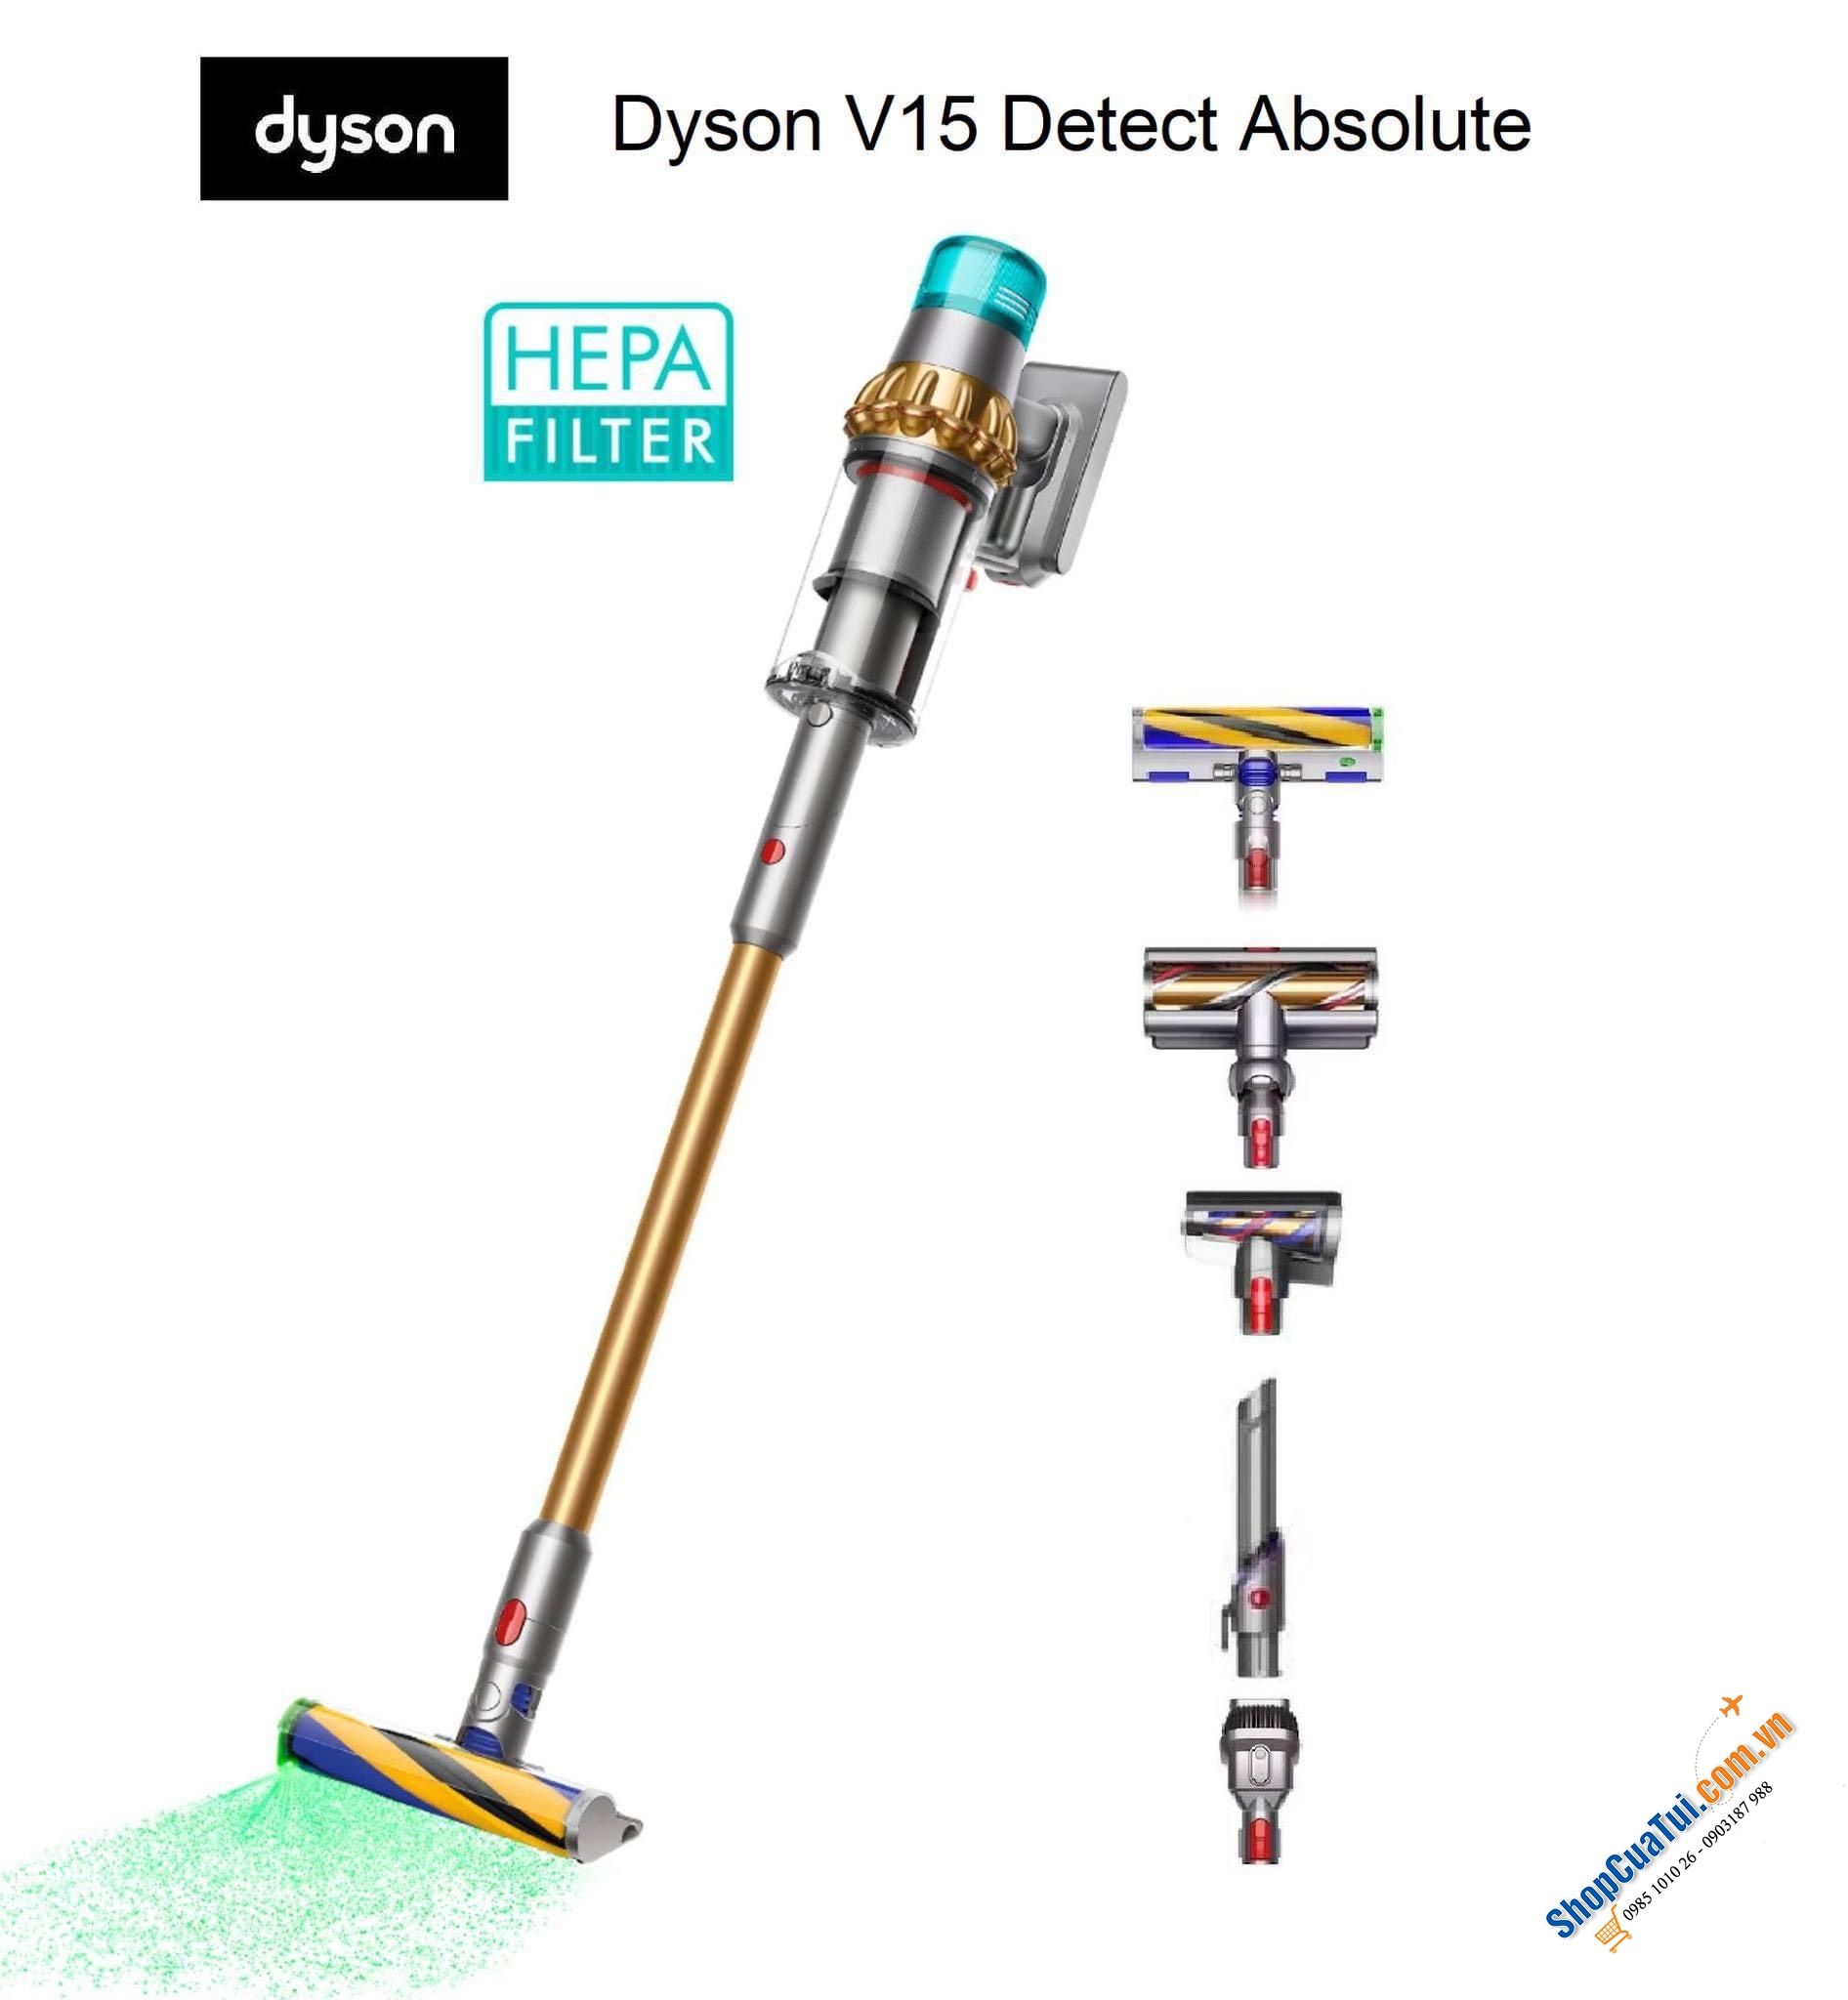 Hút bụi cầm tay DYSON V15 DETECT ABSOLUTE  bản HEPA ống vàng - CÓ ĐÈN LAZE, THÙNG RÁC LỚN, CÔNG SUẤT KHOẺ  - Model hút bụi xịn sò của Dyson